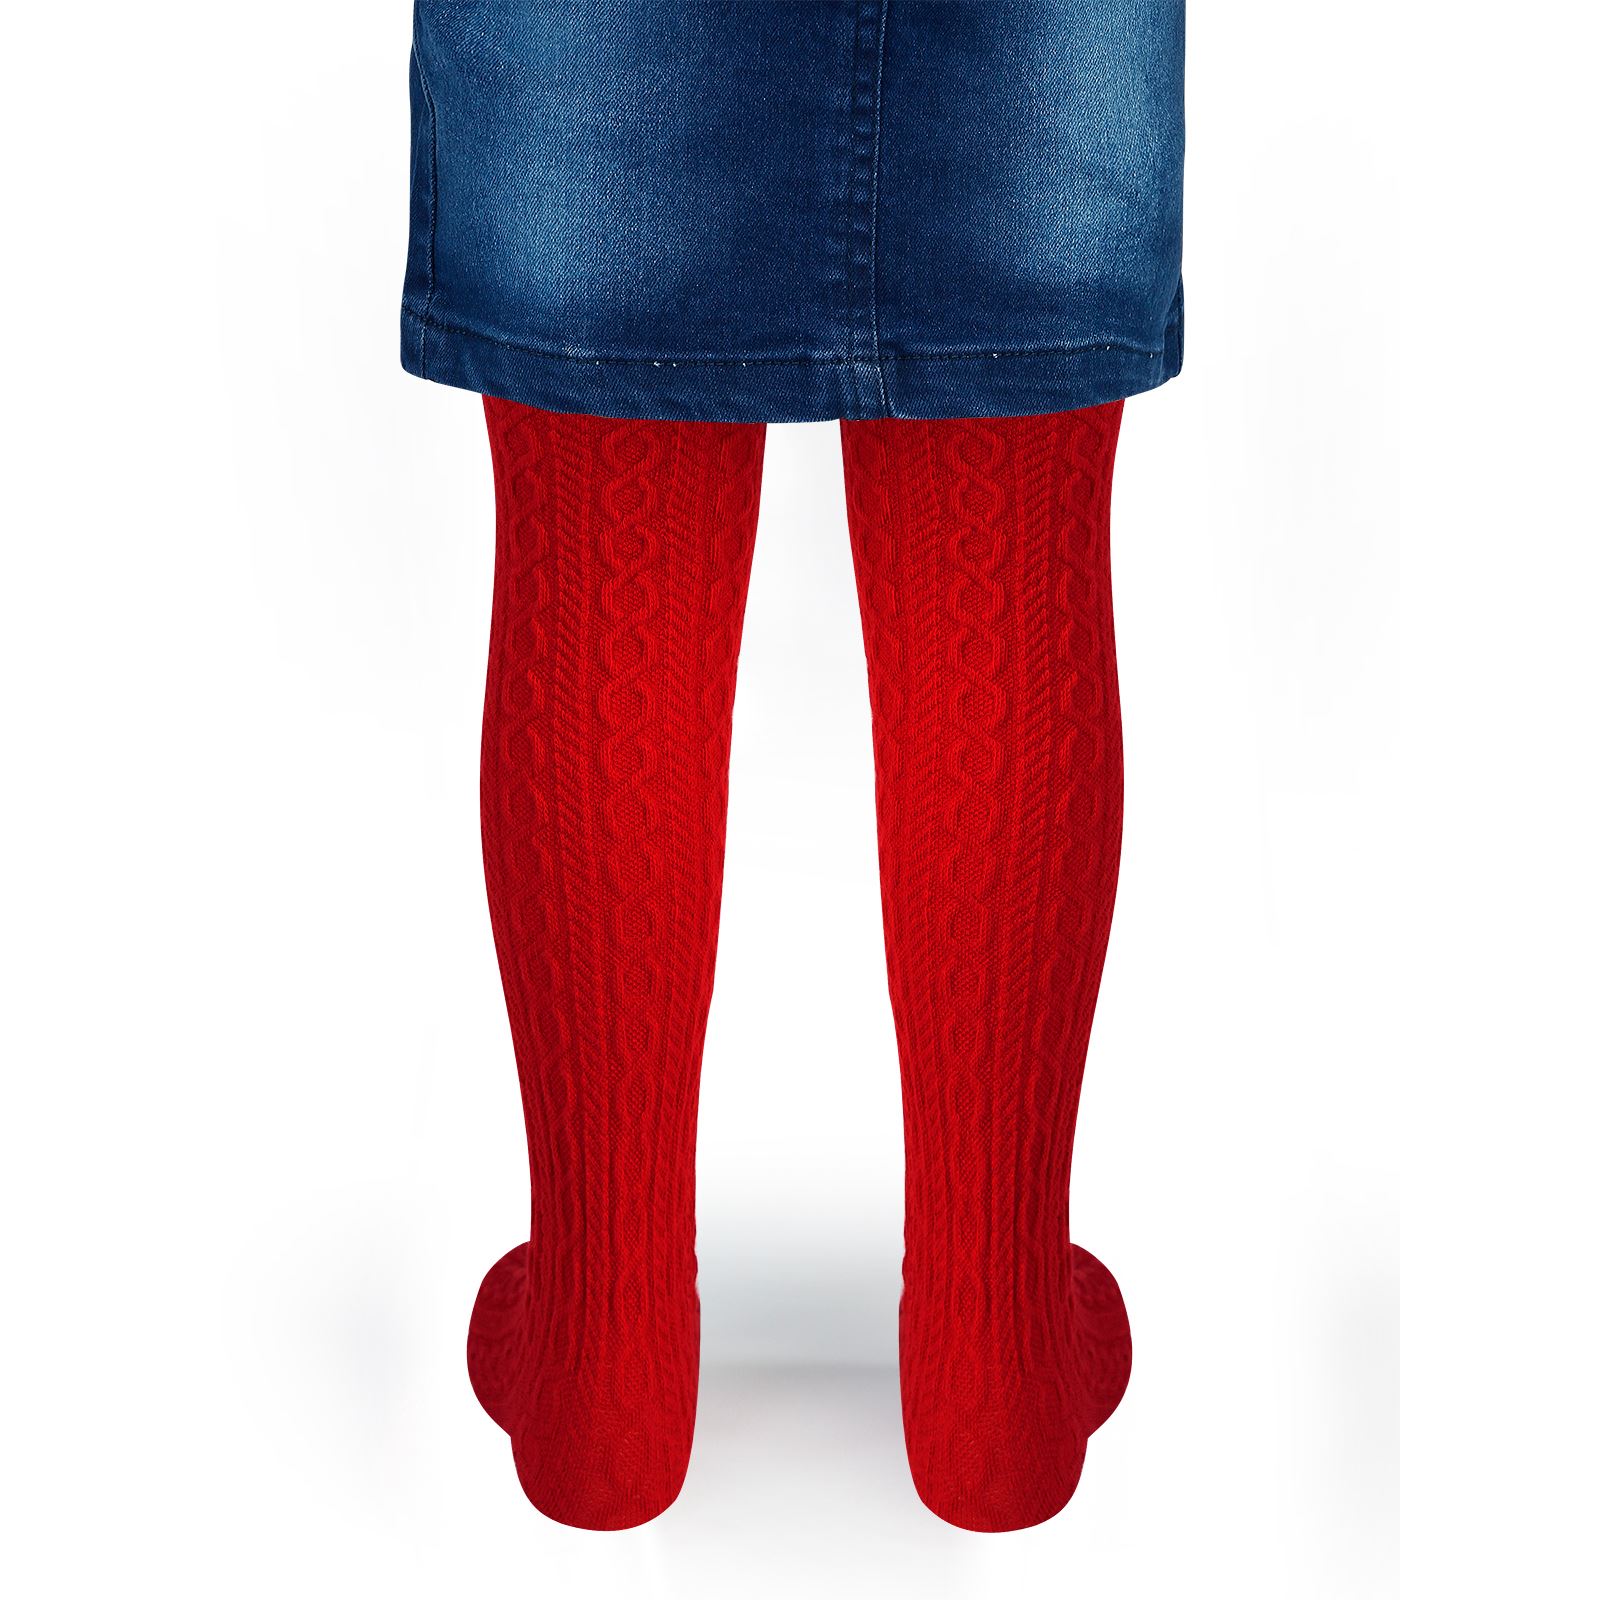 Bella Calze Kız Çocuk Külotlu Çorap 2-11 Yaş  Kırmızı